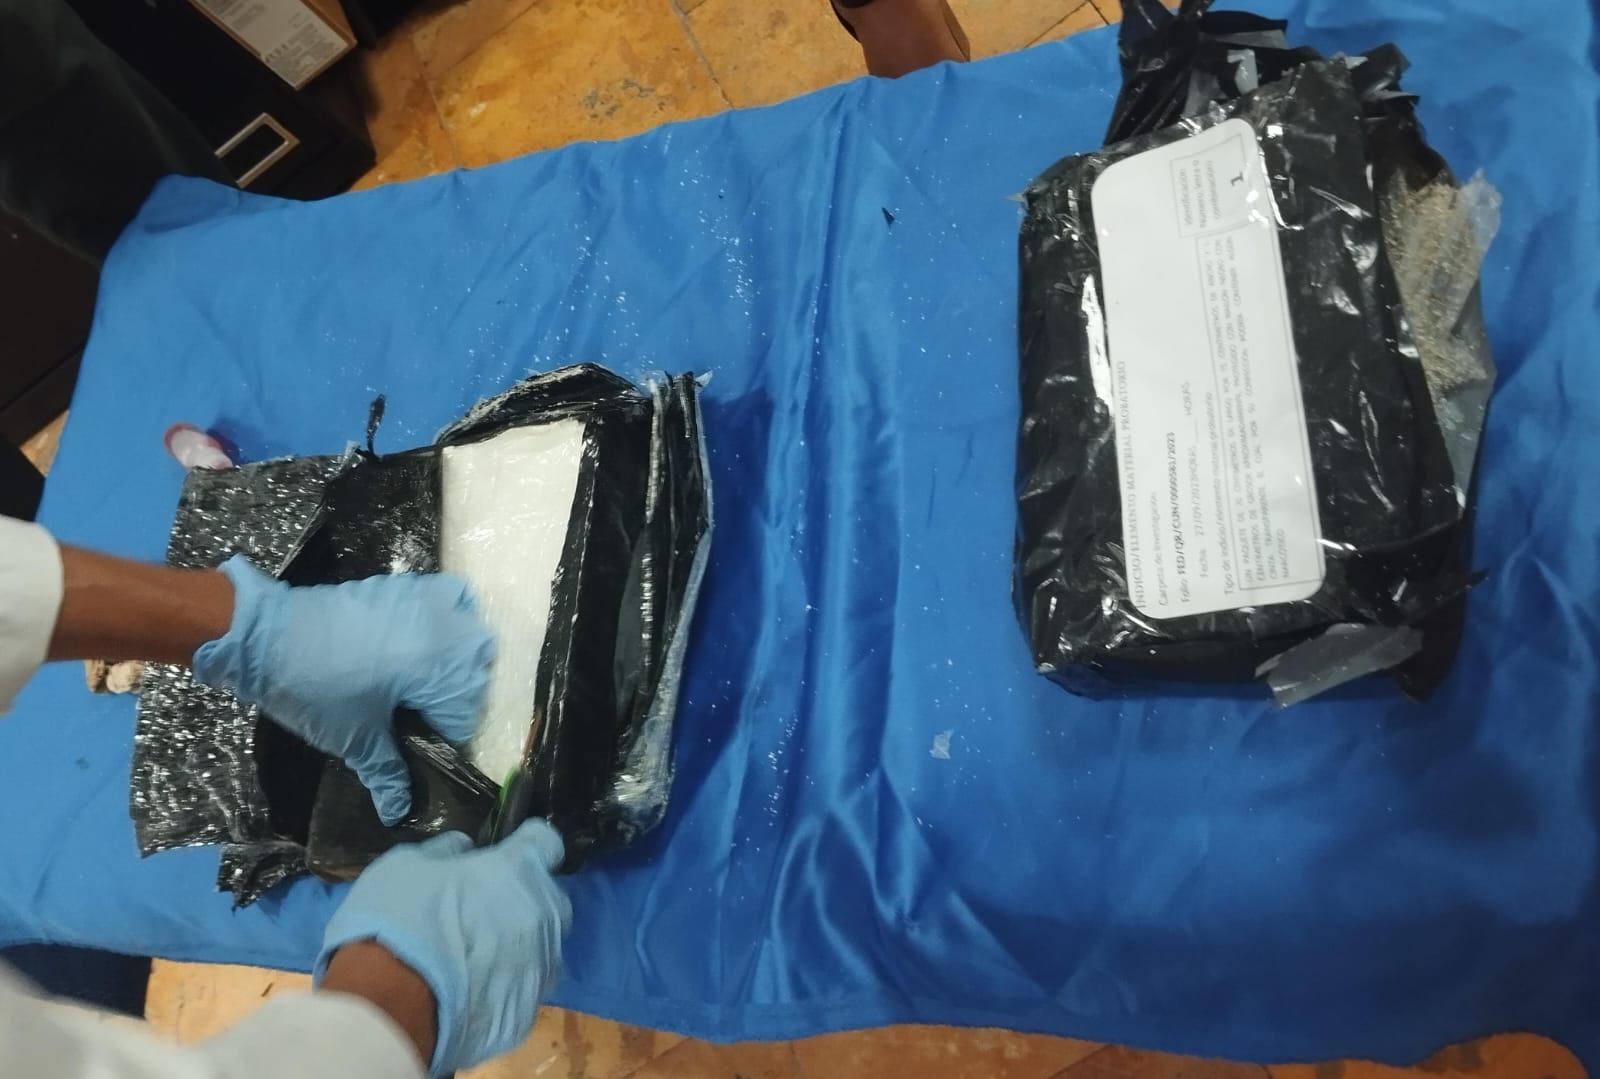 El ladrillo de cocaína fue hallado en la costa de Cozumel